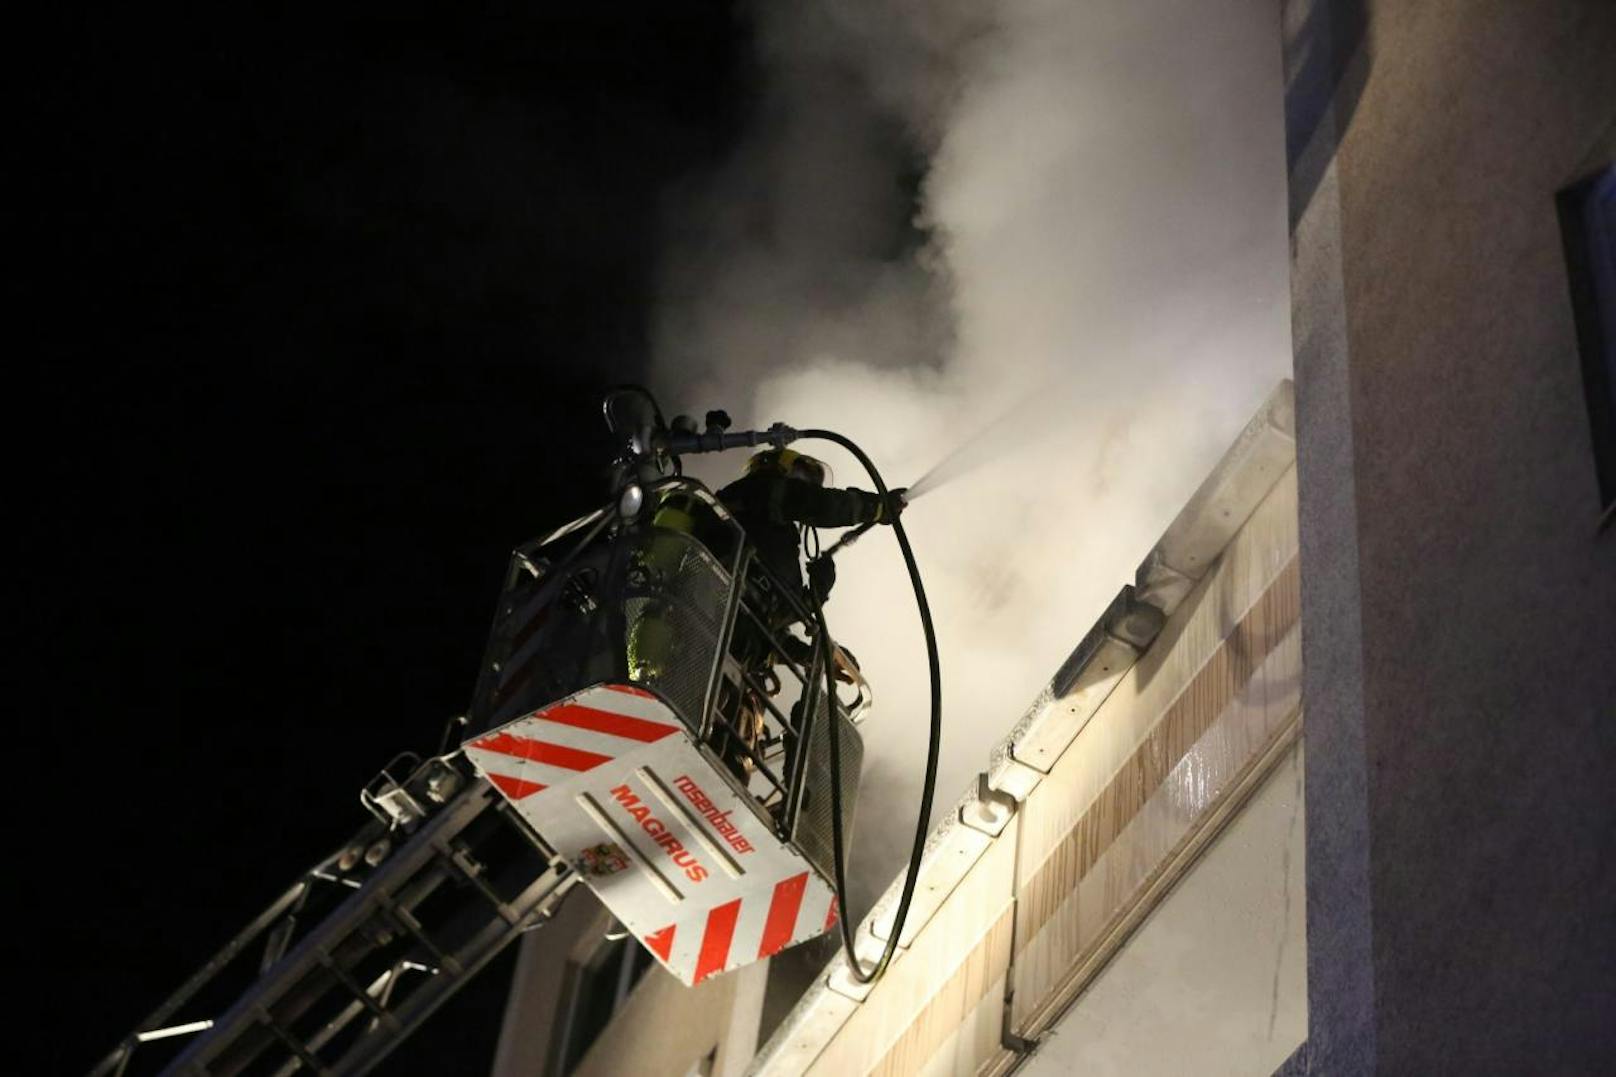 Brand in Mehrparteienhaus Wr. Neustadt - 43 Bewohner mussten aus Gebäude, darunter 4 Kleinkinder